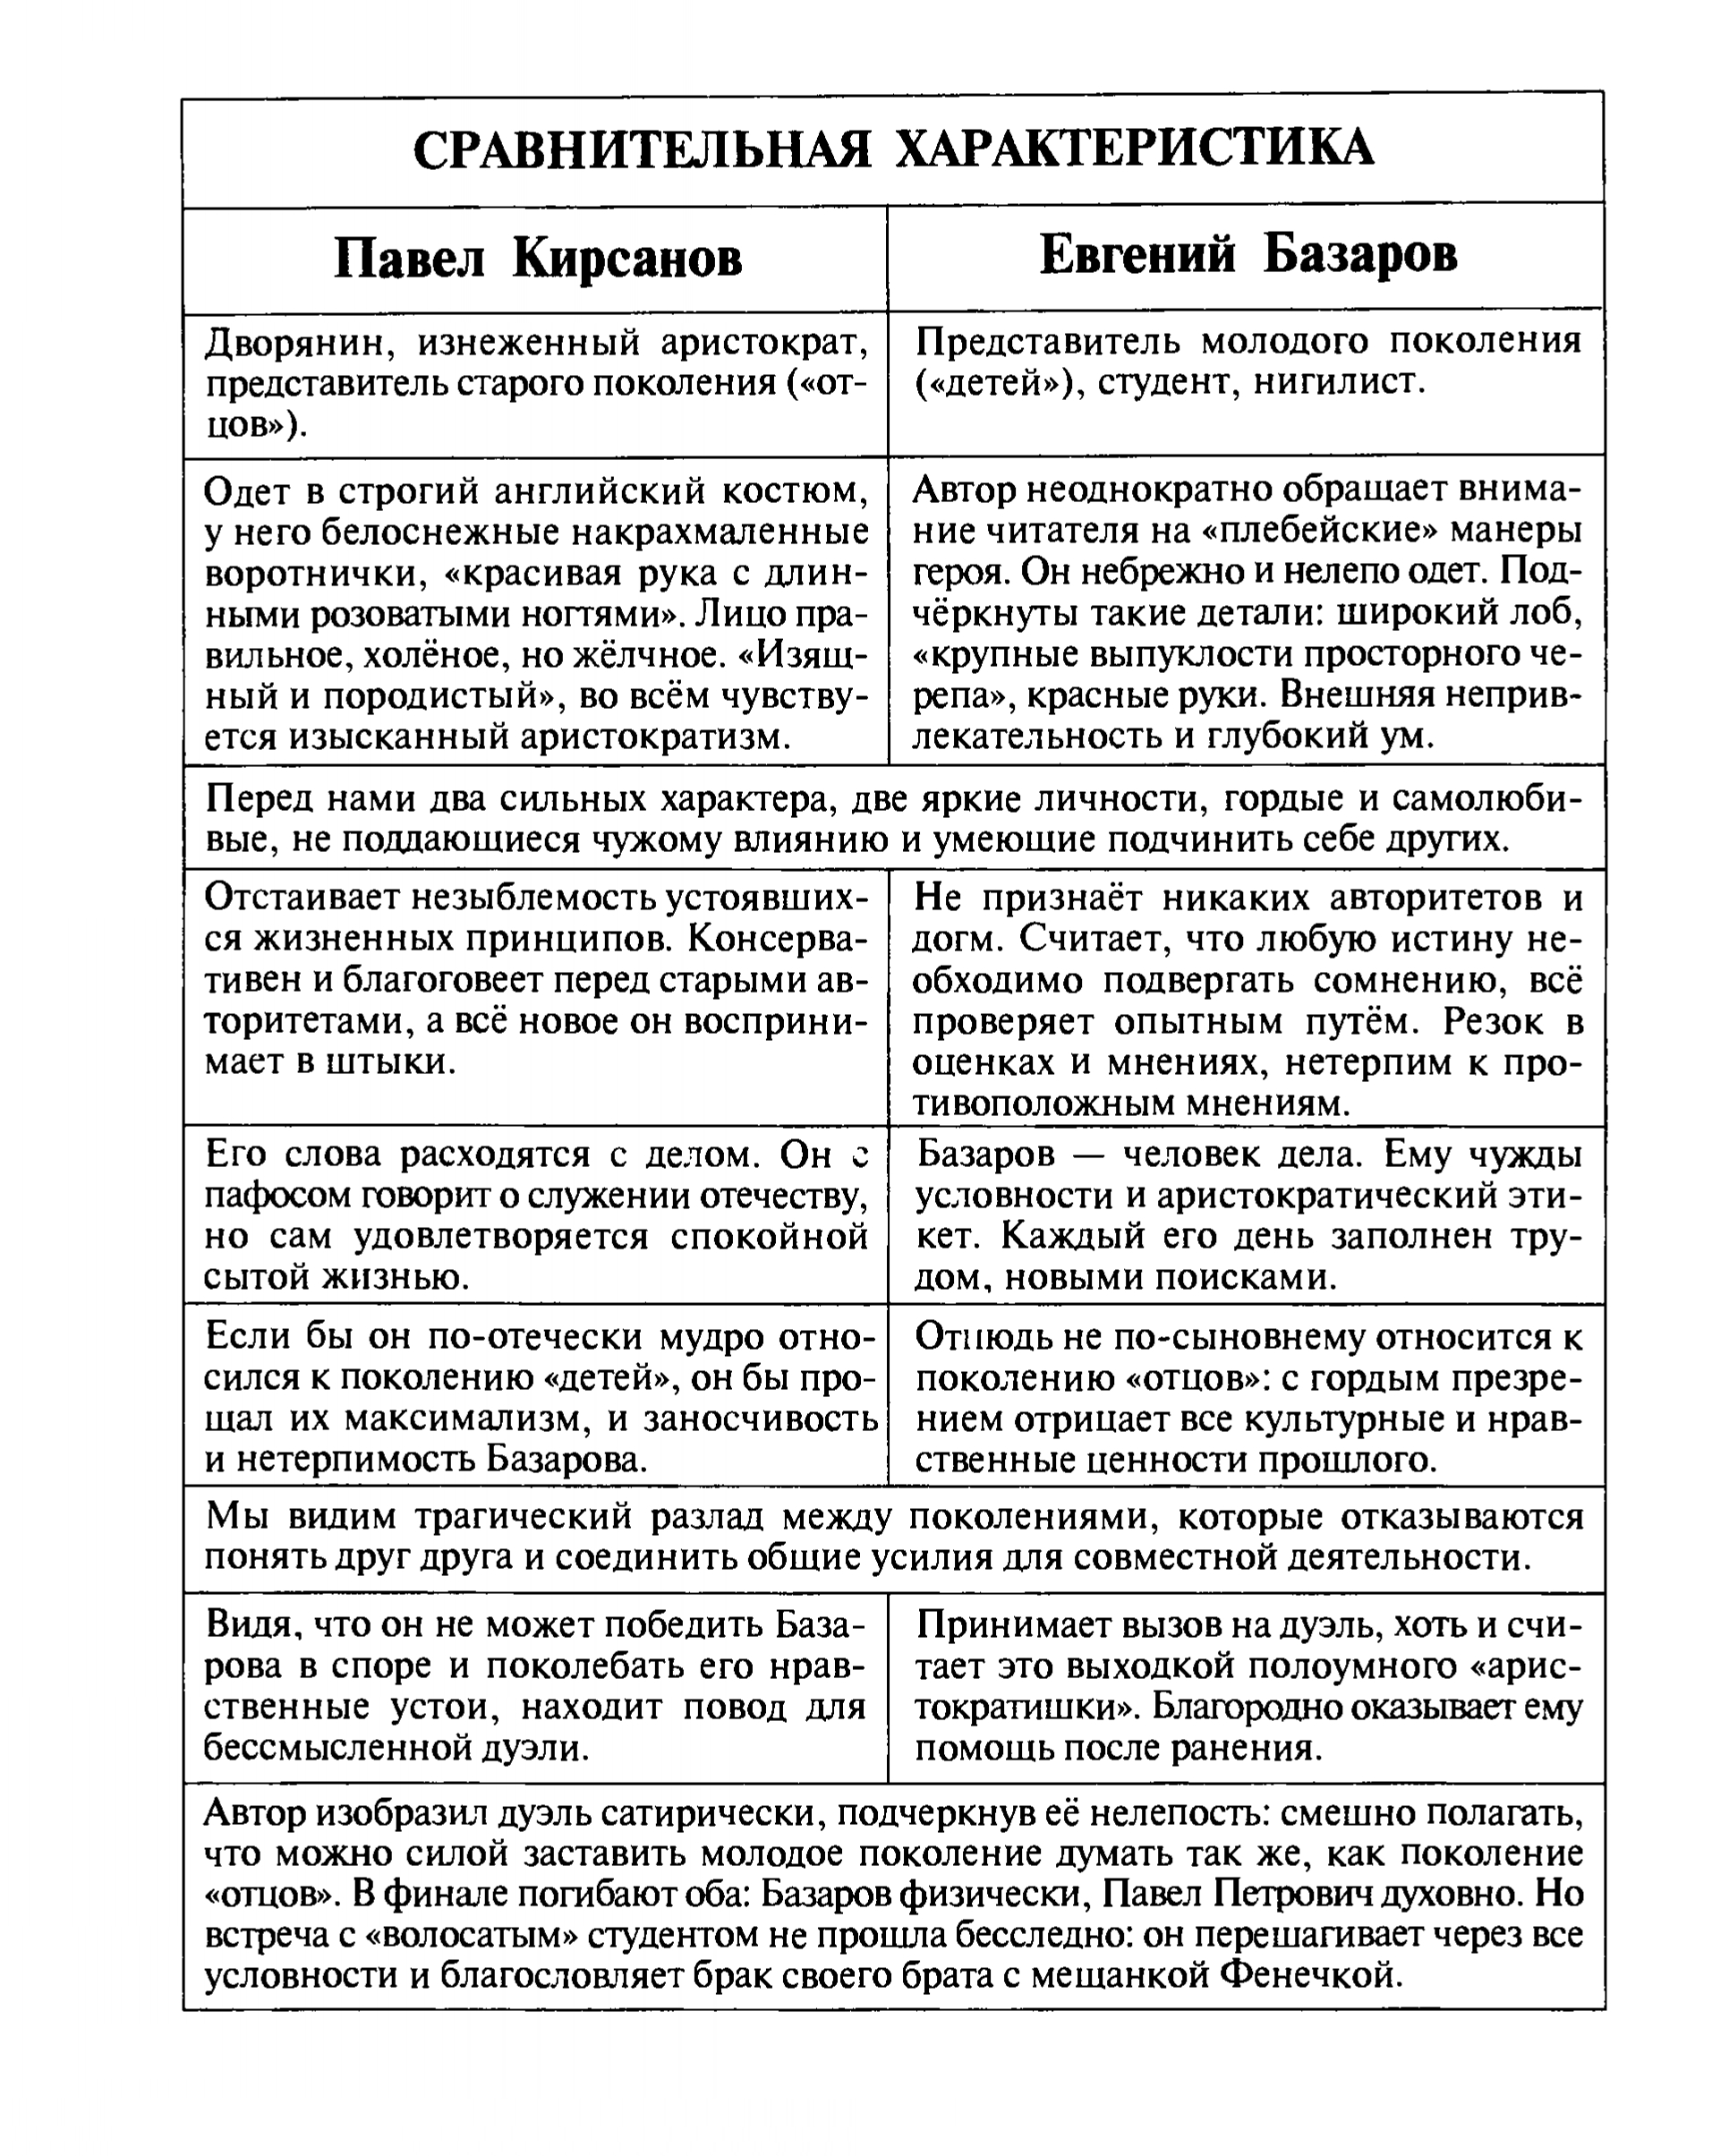 Сравнительная характеристика П. Кирсанова и Е. Базарова (таблица)